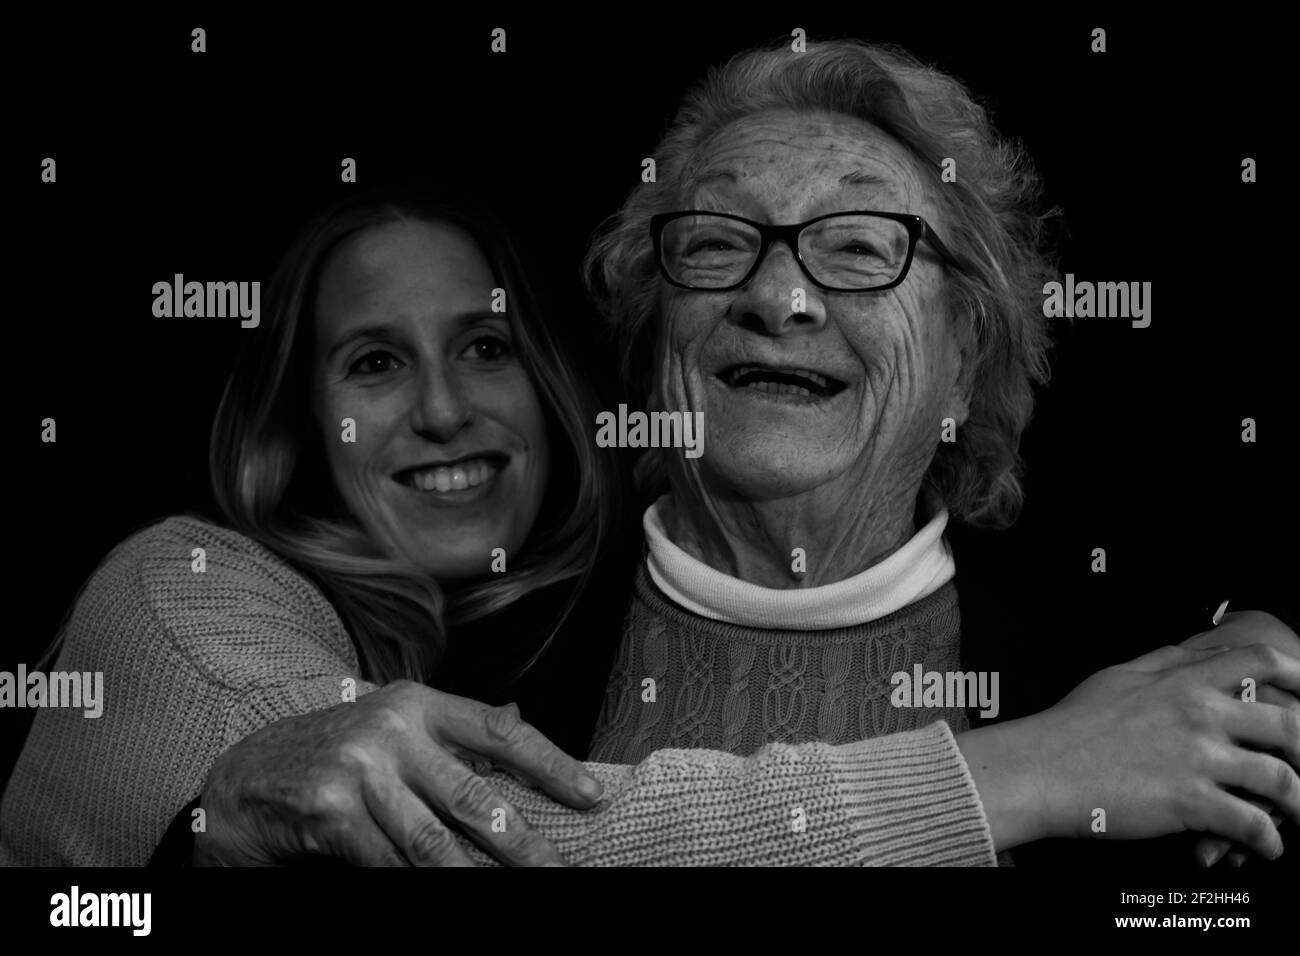 Ritratto di famiglia della donna anziana degli anni 80 abbracciando la giovane grande figlia.Fotografia in bianco e nero di persone felici sorridenti stile di vita concettuale. Foto Stock